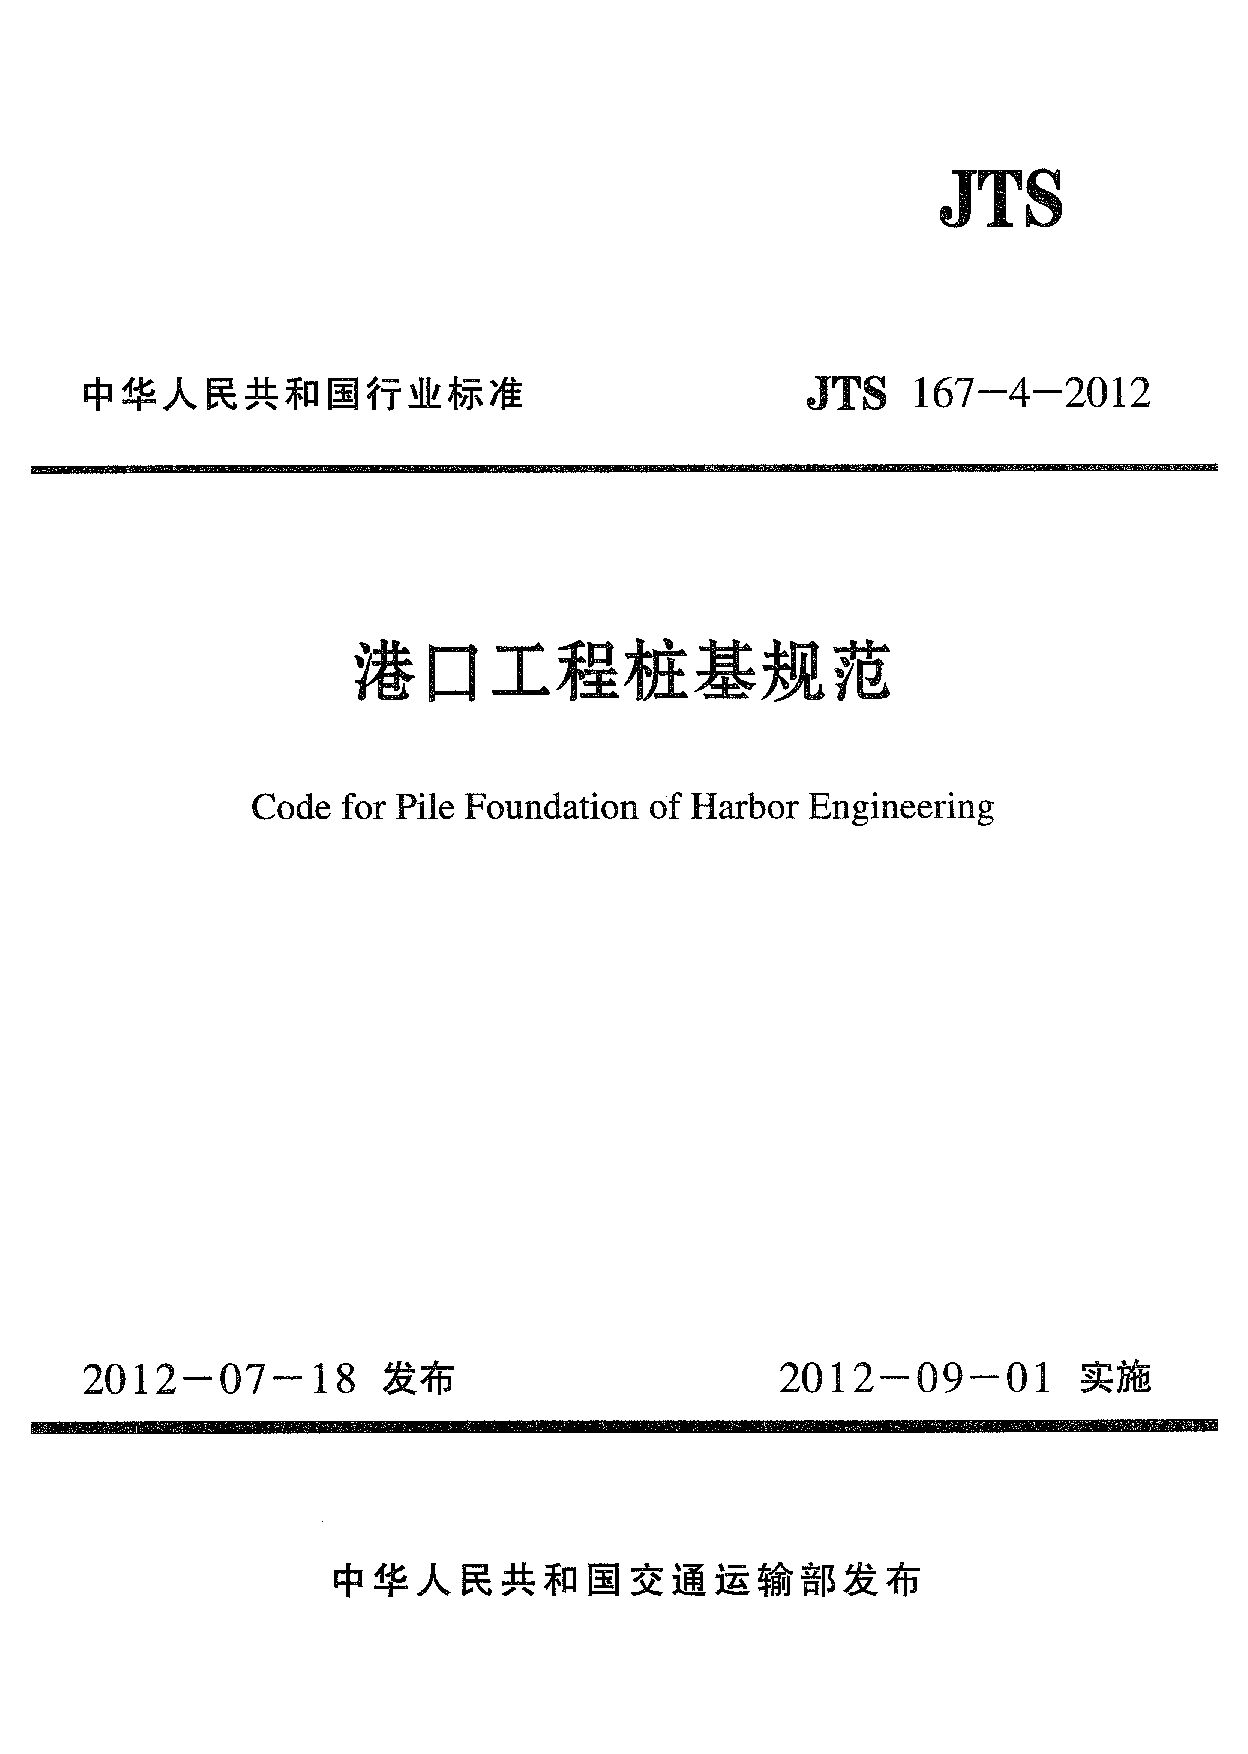 JTS 167-4-2012封面图